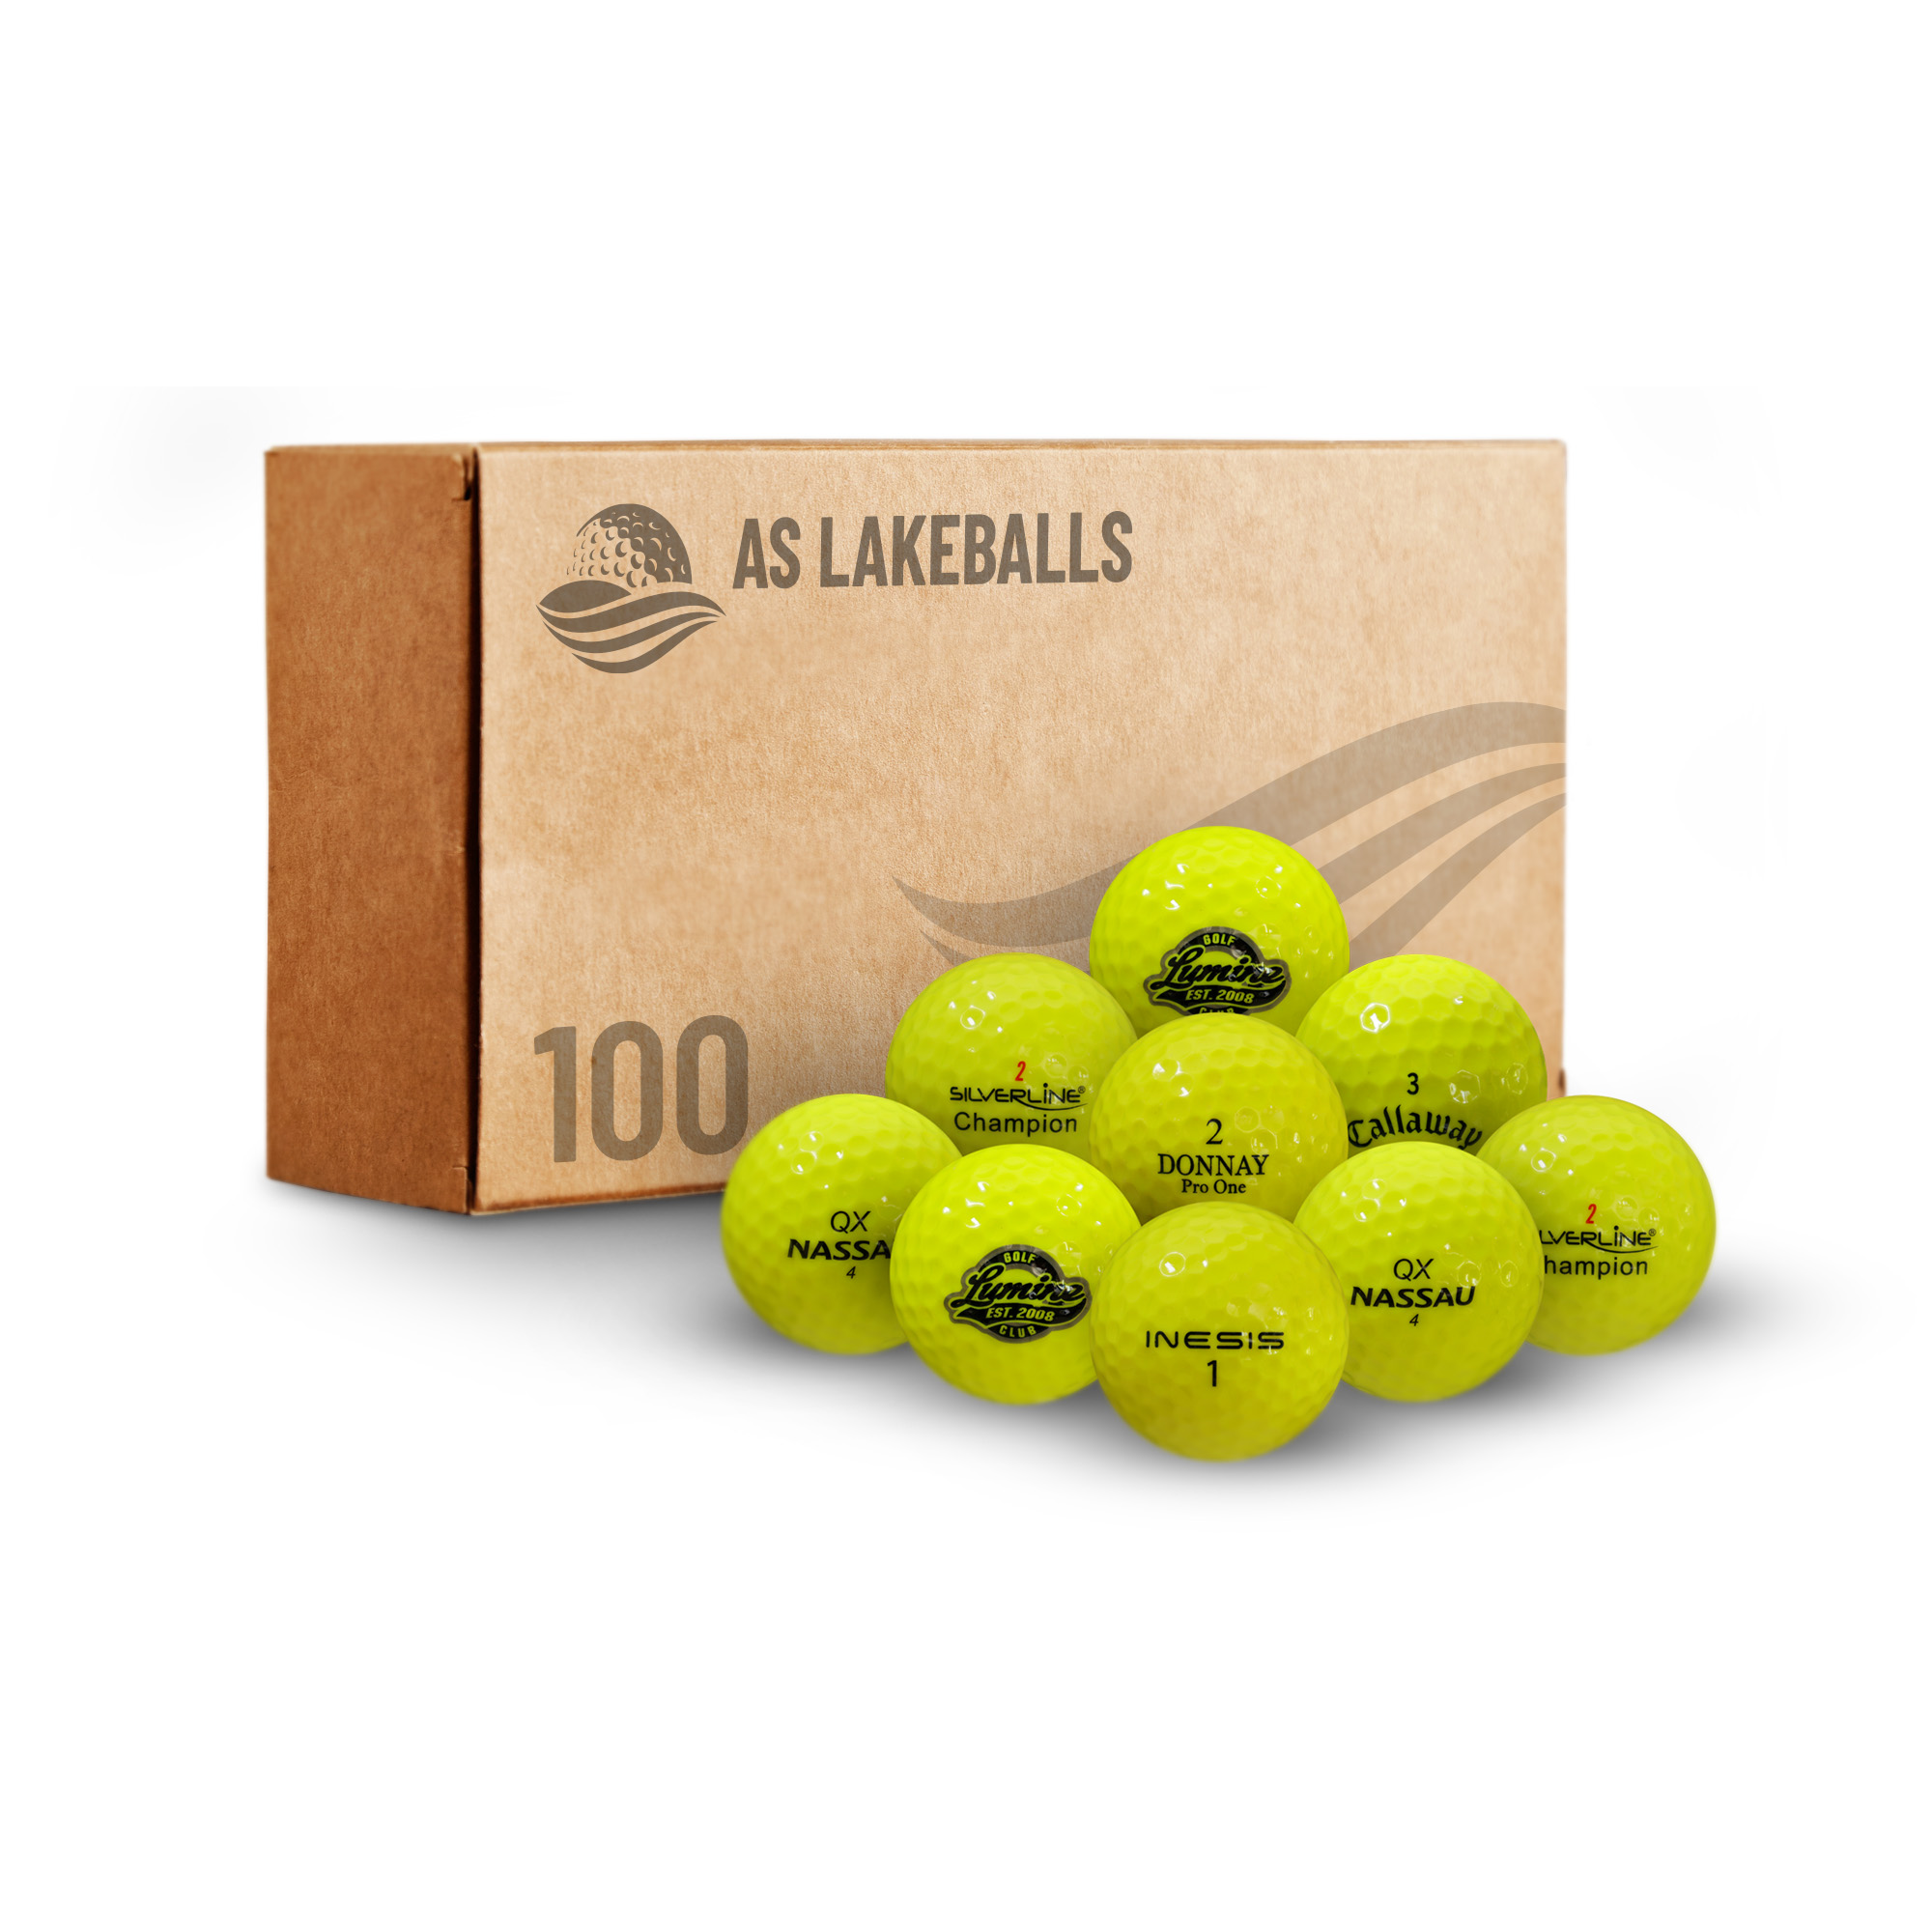 100 gelbe/leuchtgelbe Mix AA-AAA bei AS Lakeballs günstig kaufen